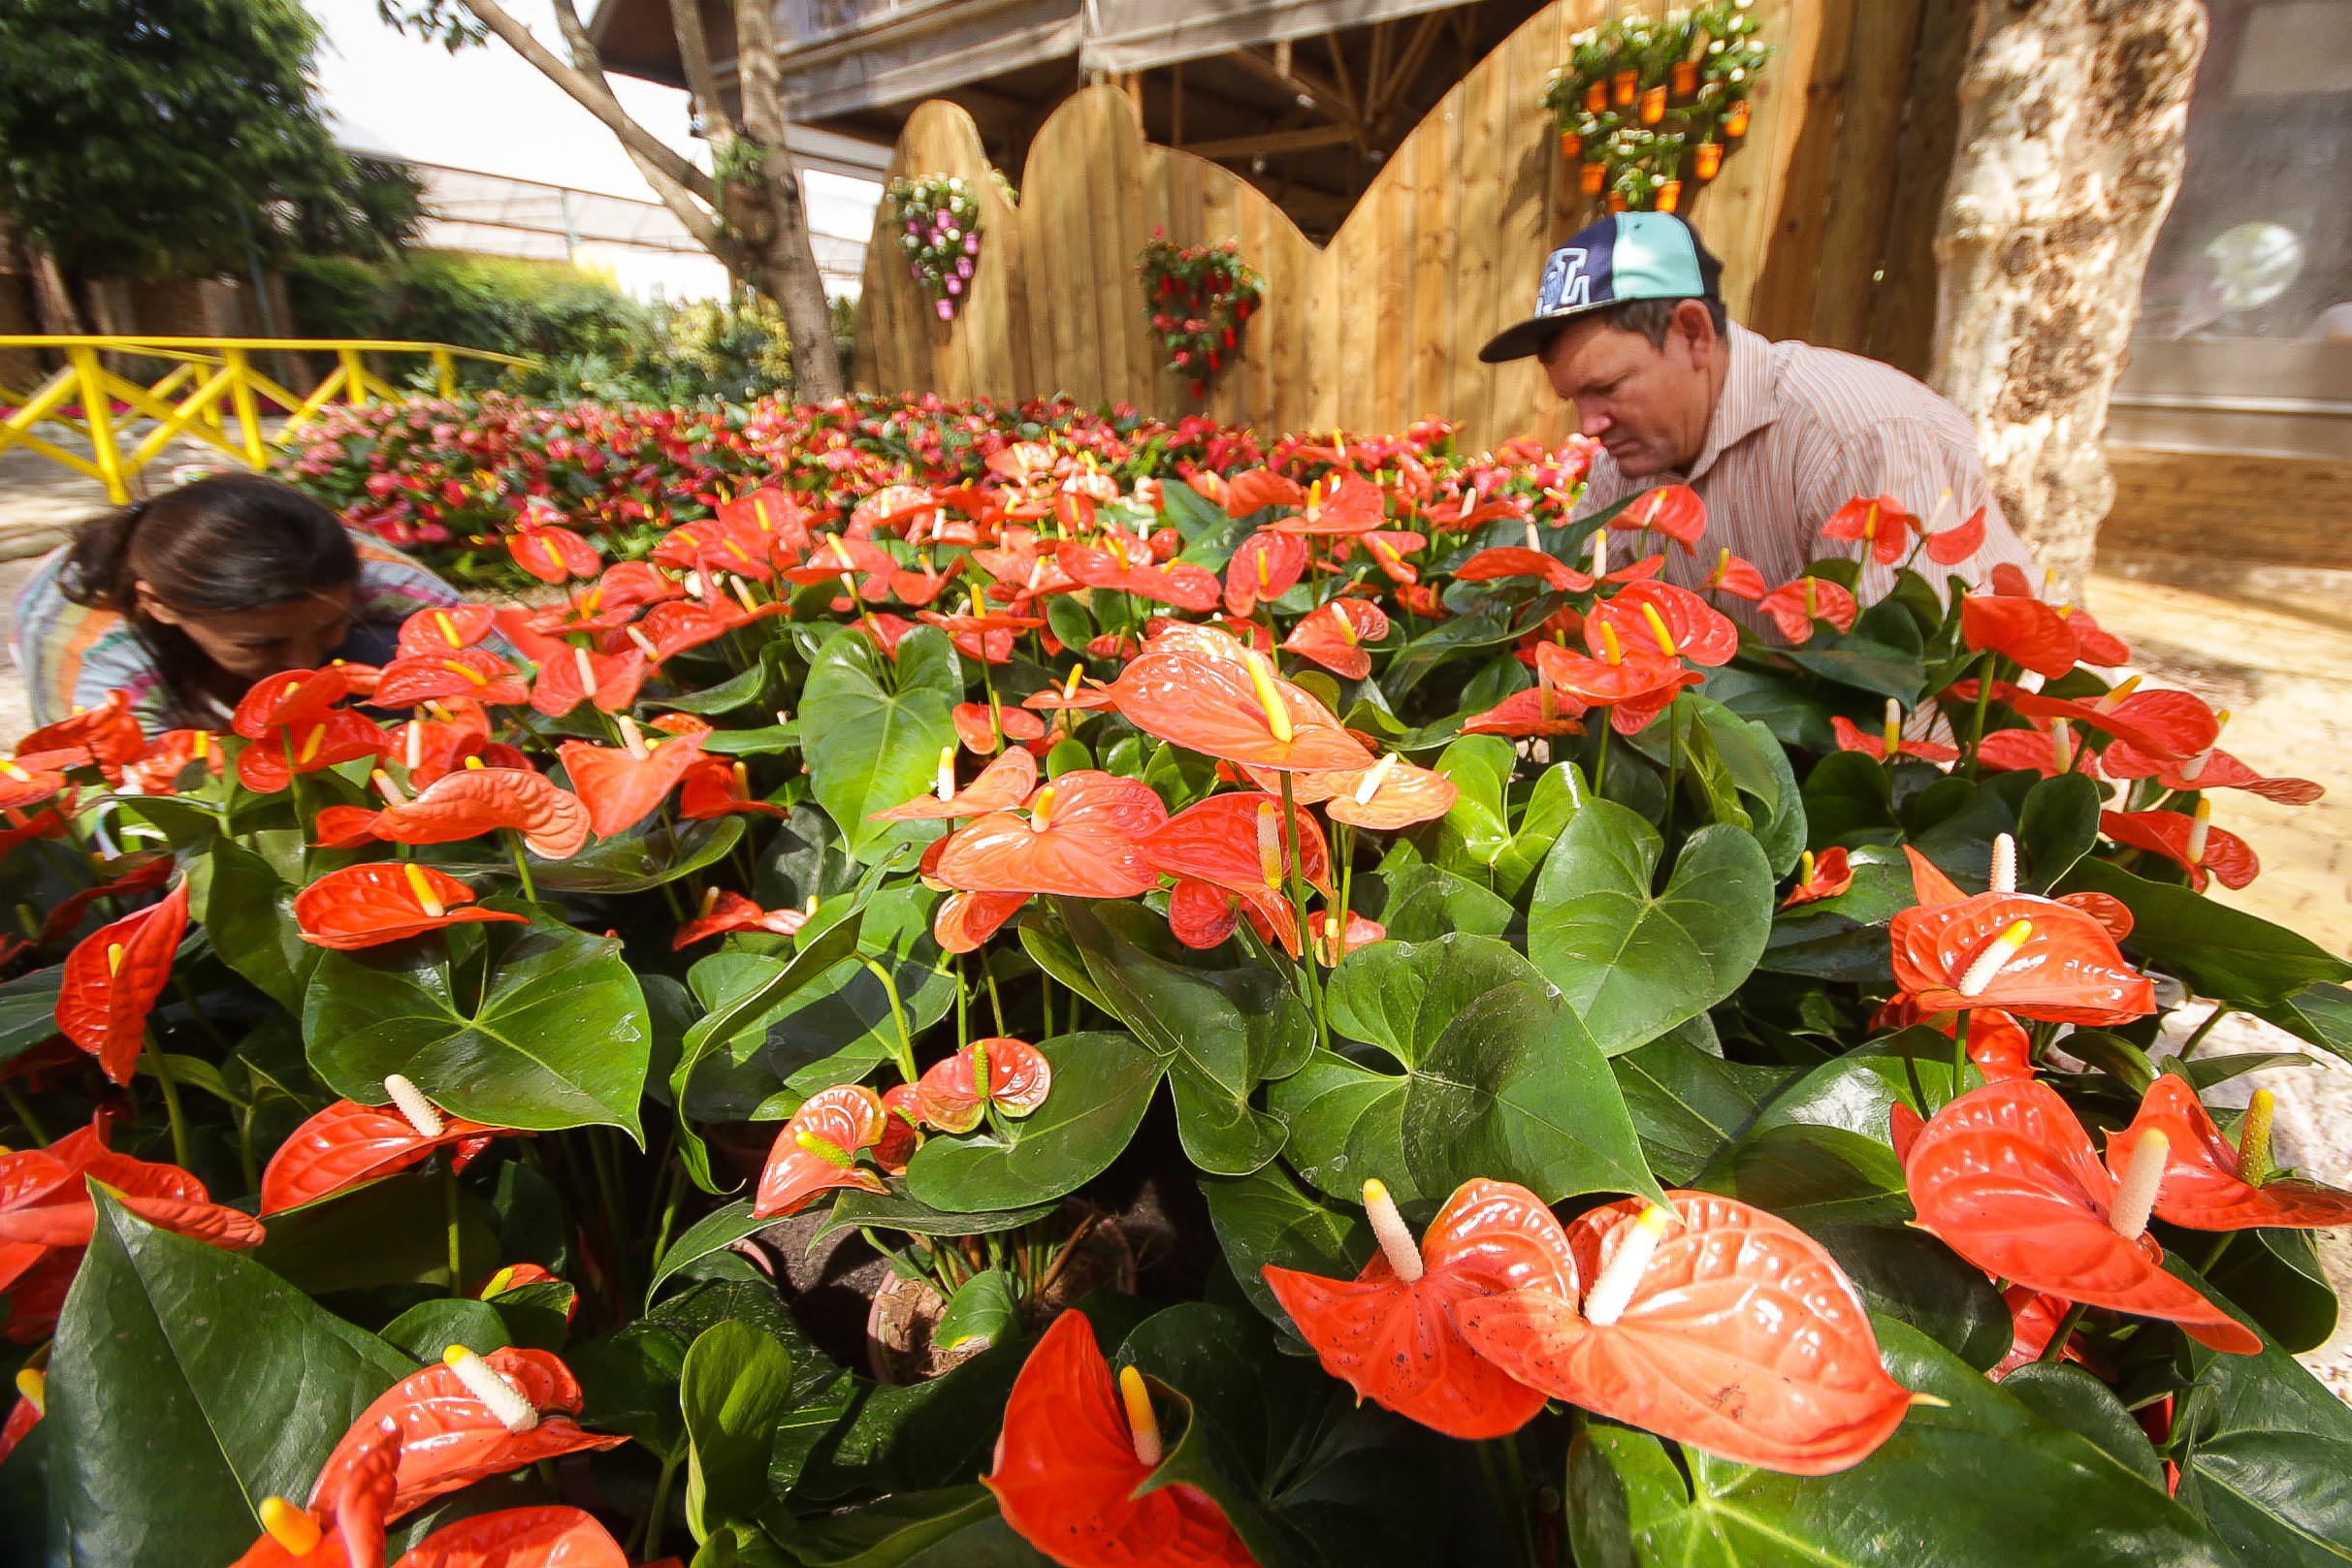 Feira de flores em Holambra apresenta as novidades da floricultura e paisagismo (Foto: Getty Images)